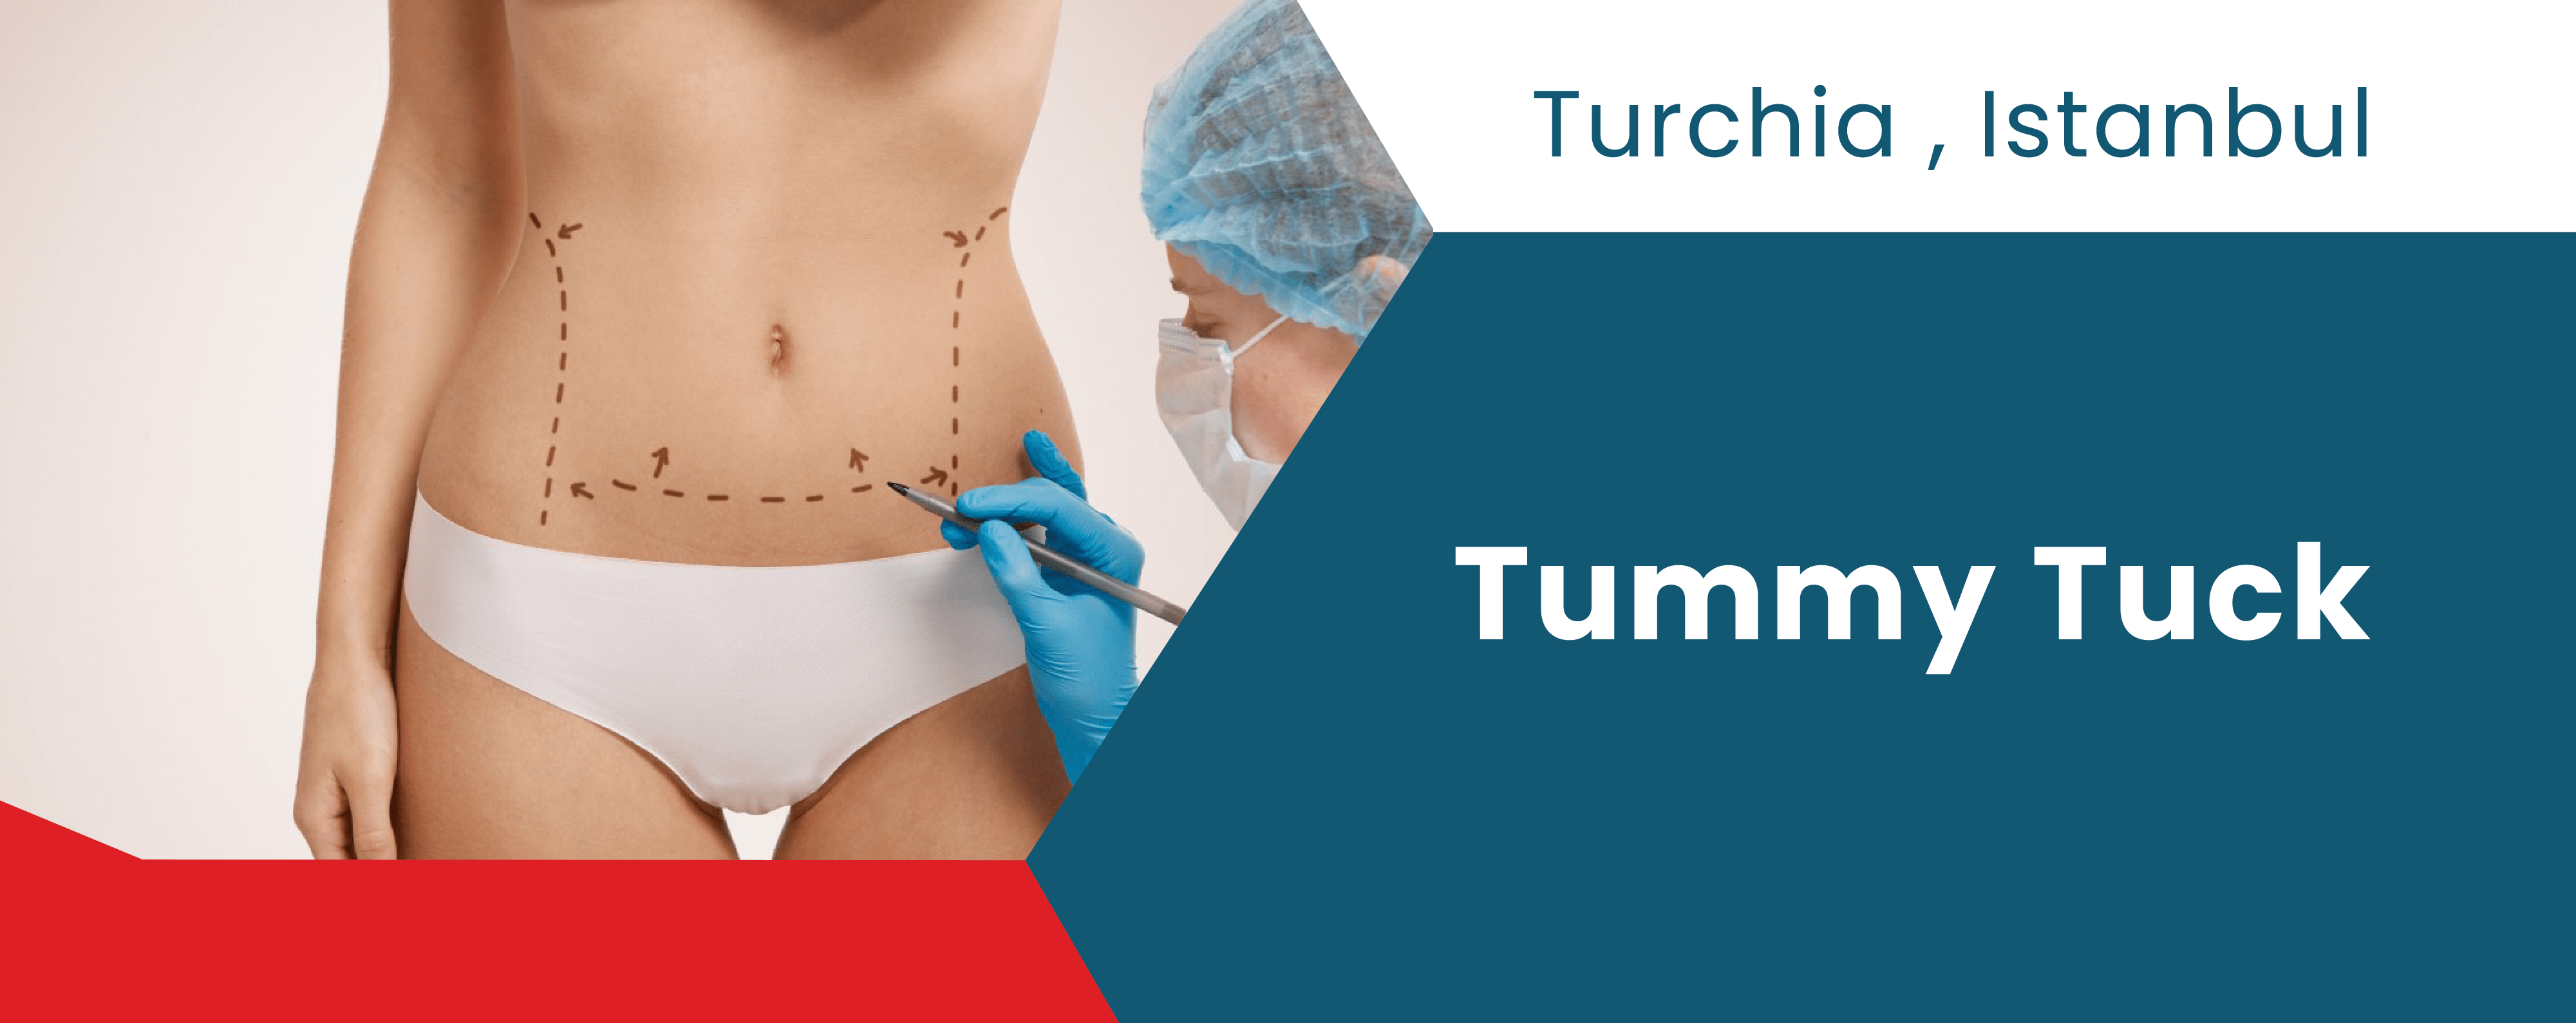 Cirugía Plástica en Turquía | Abdominoplastia y Liposucción | Opiniones de Pacientes | ClinMedica